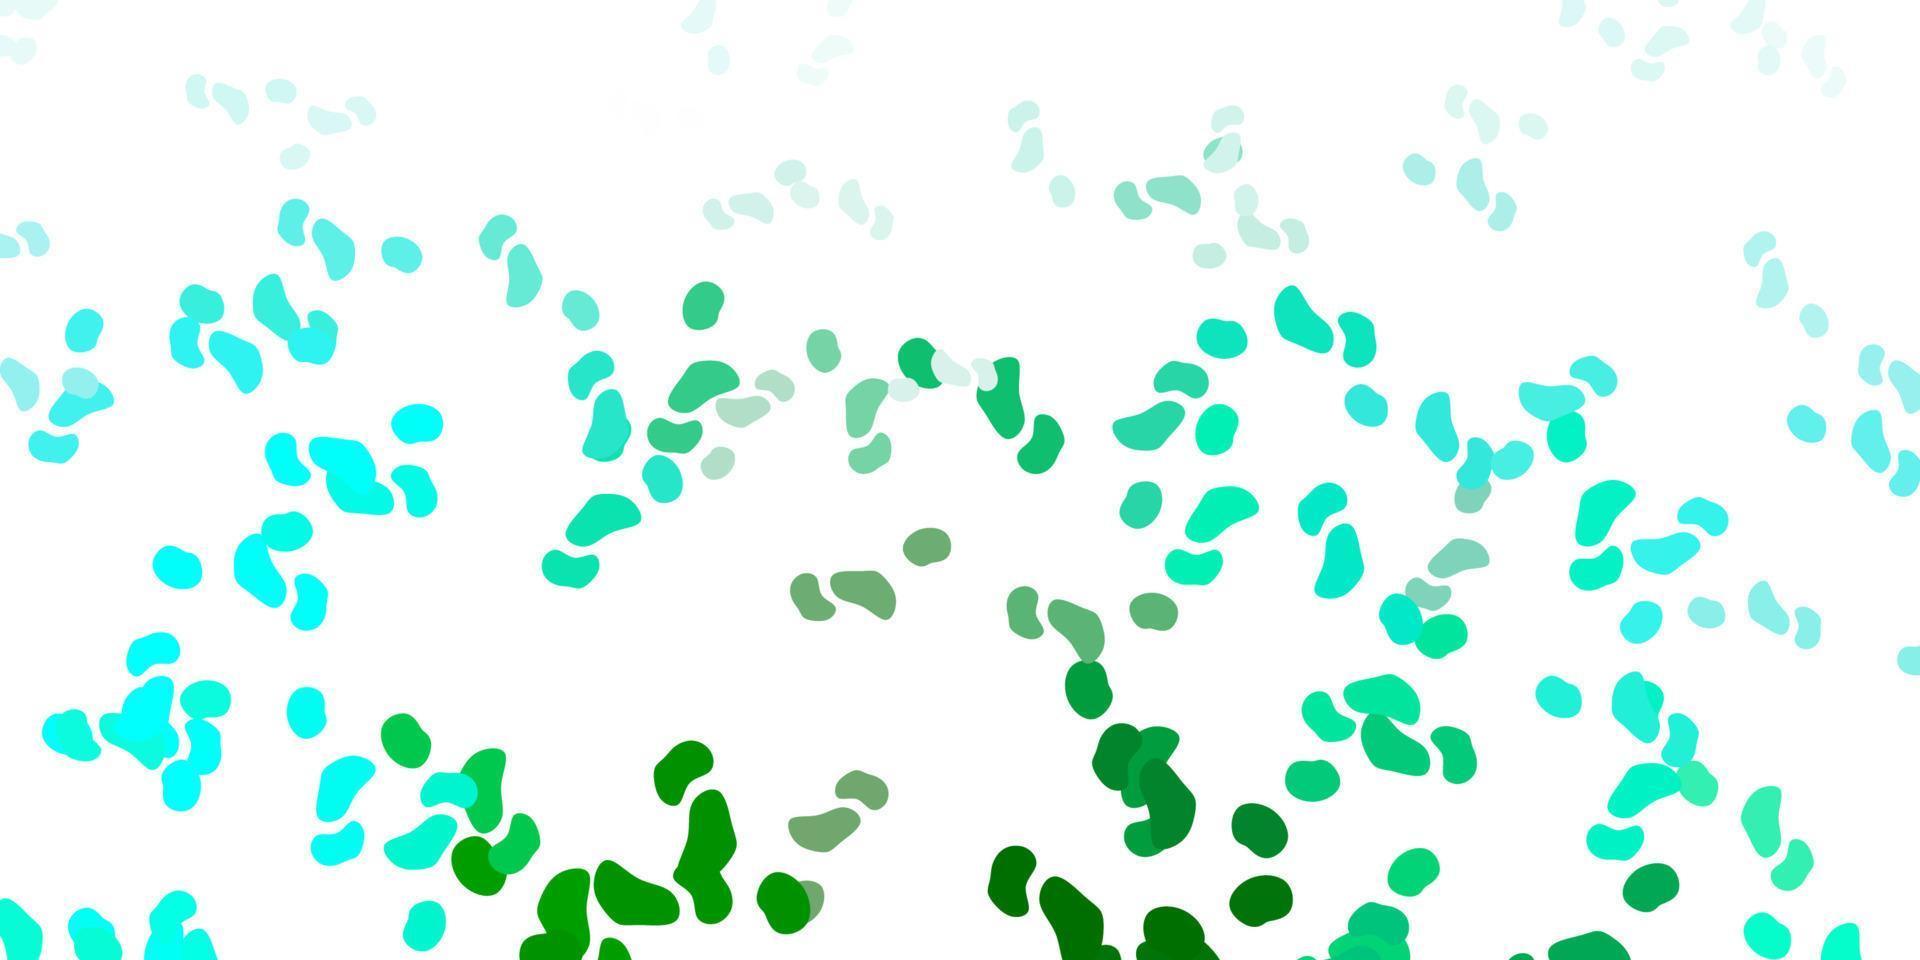 hellgrüner Vektorhintergrund mit chaotischen Formen. vektor